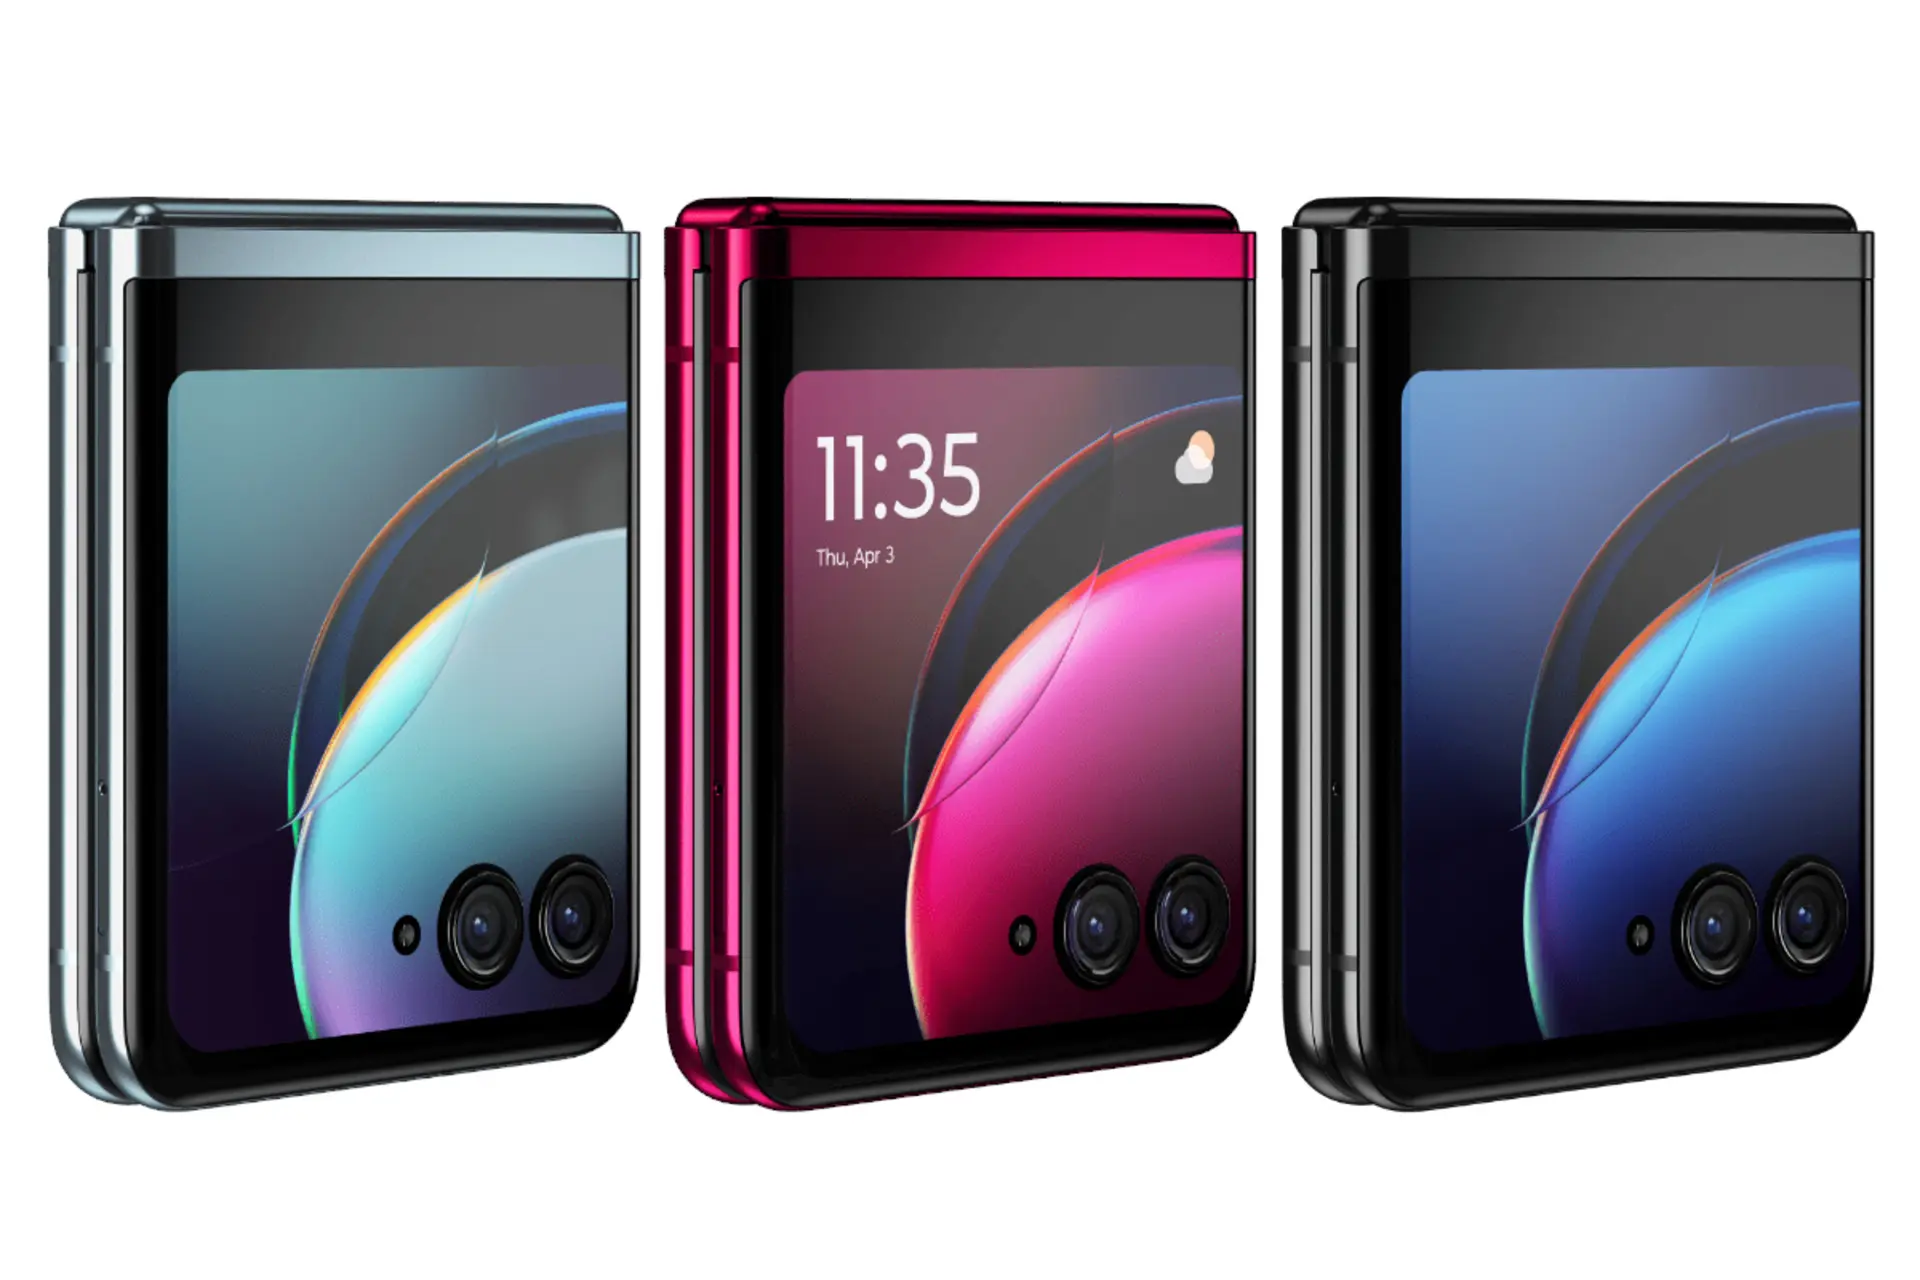 رنگ های مختلف گوشی موبایل ریزر 40 اولترا موتورولا / Motorola Razr 40 Ultra